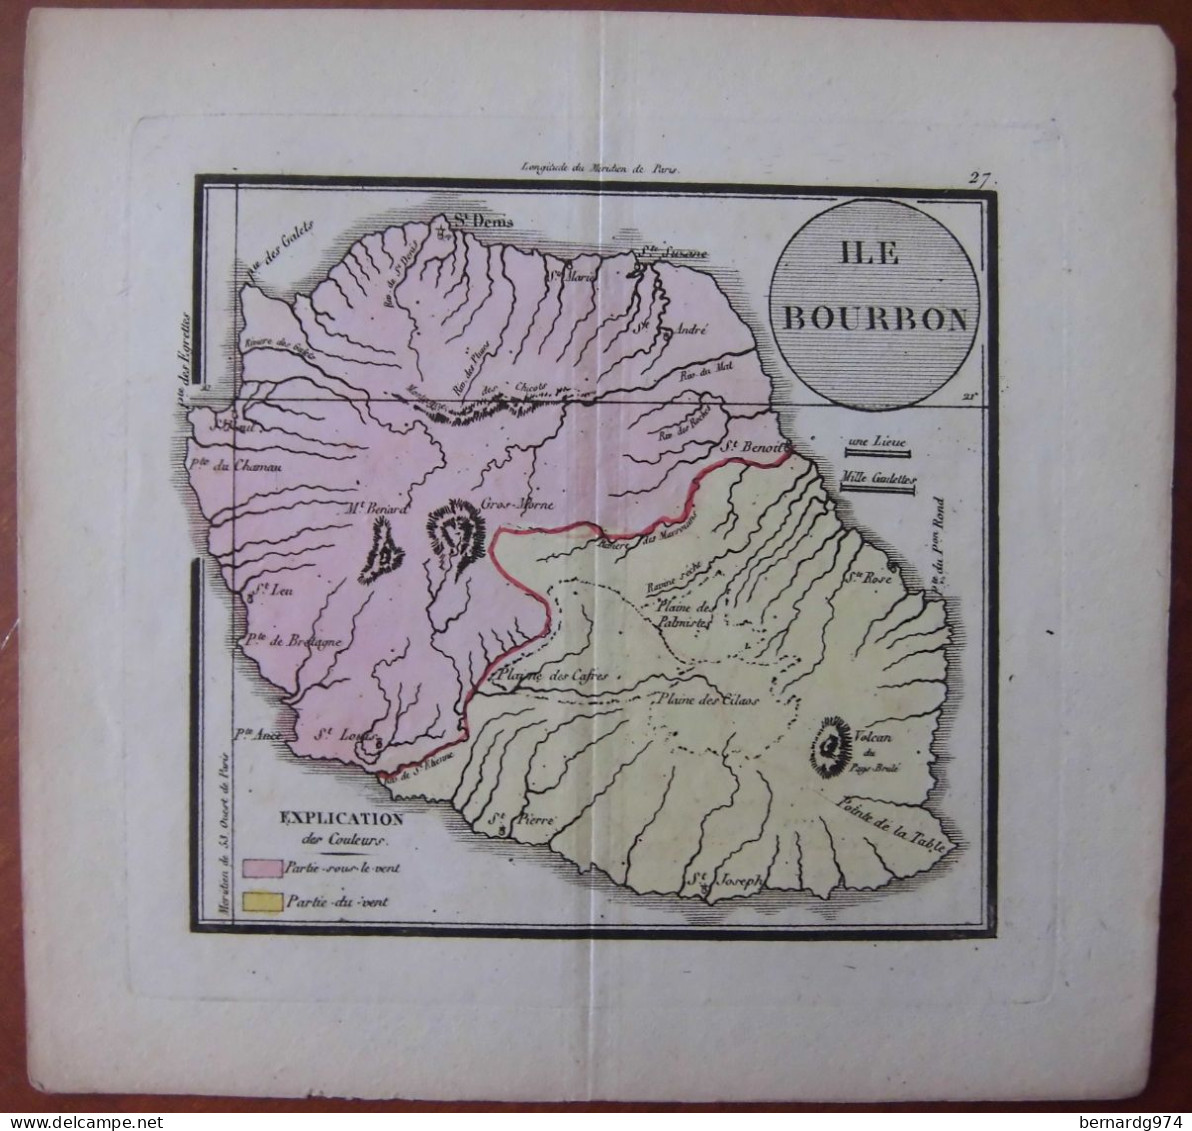 Réunion Bourbon : Rare Carte En Couleur De 1825 Par Denesle  Tardieu - Carte Geographique